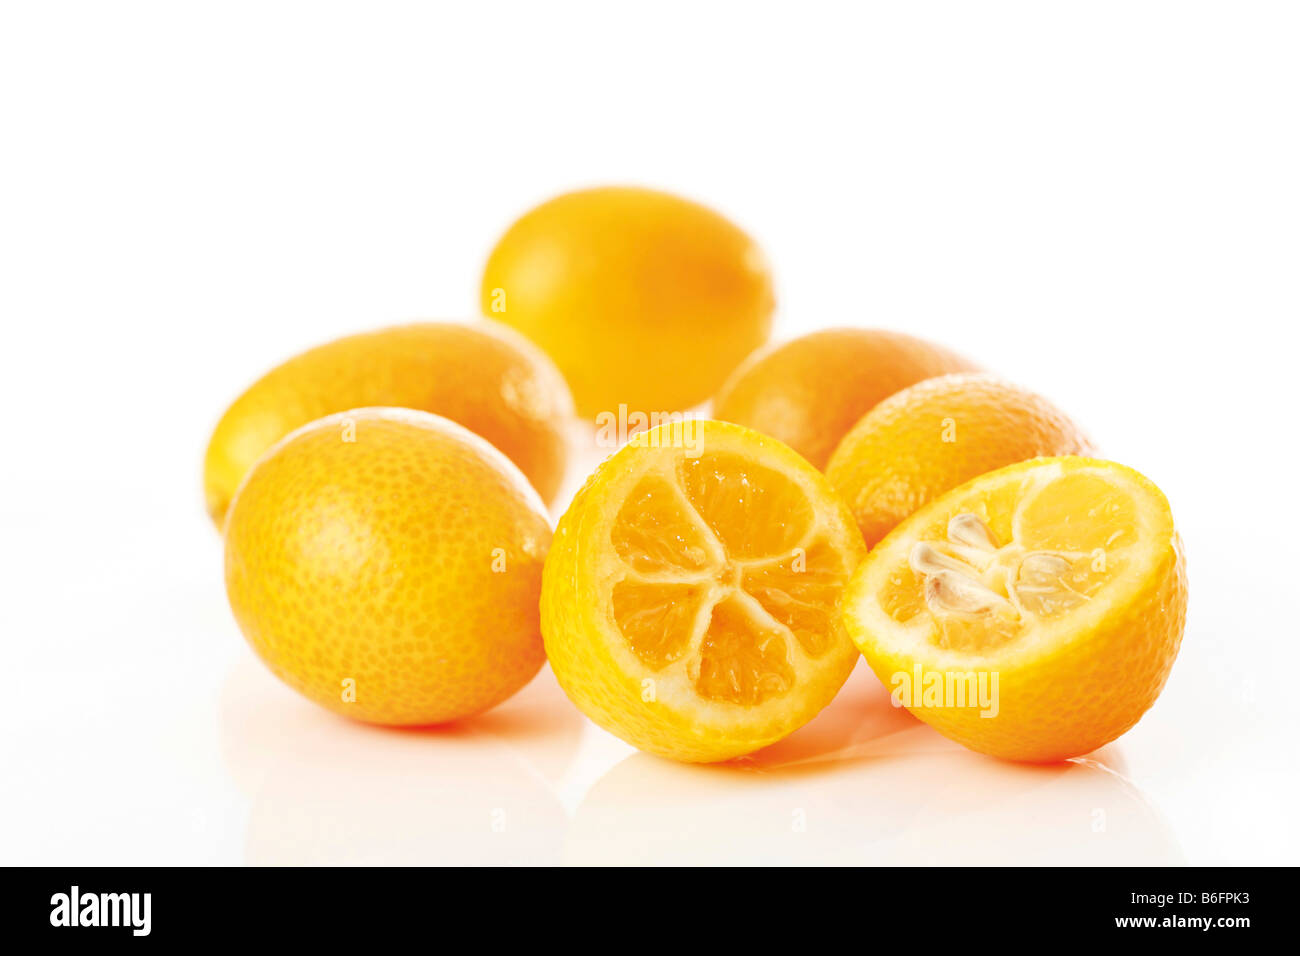 Kumquats or Cumquats (Fortunella), citrus fruit Stock Photo